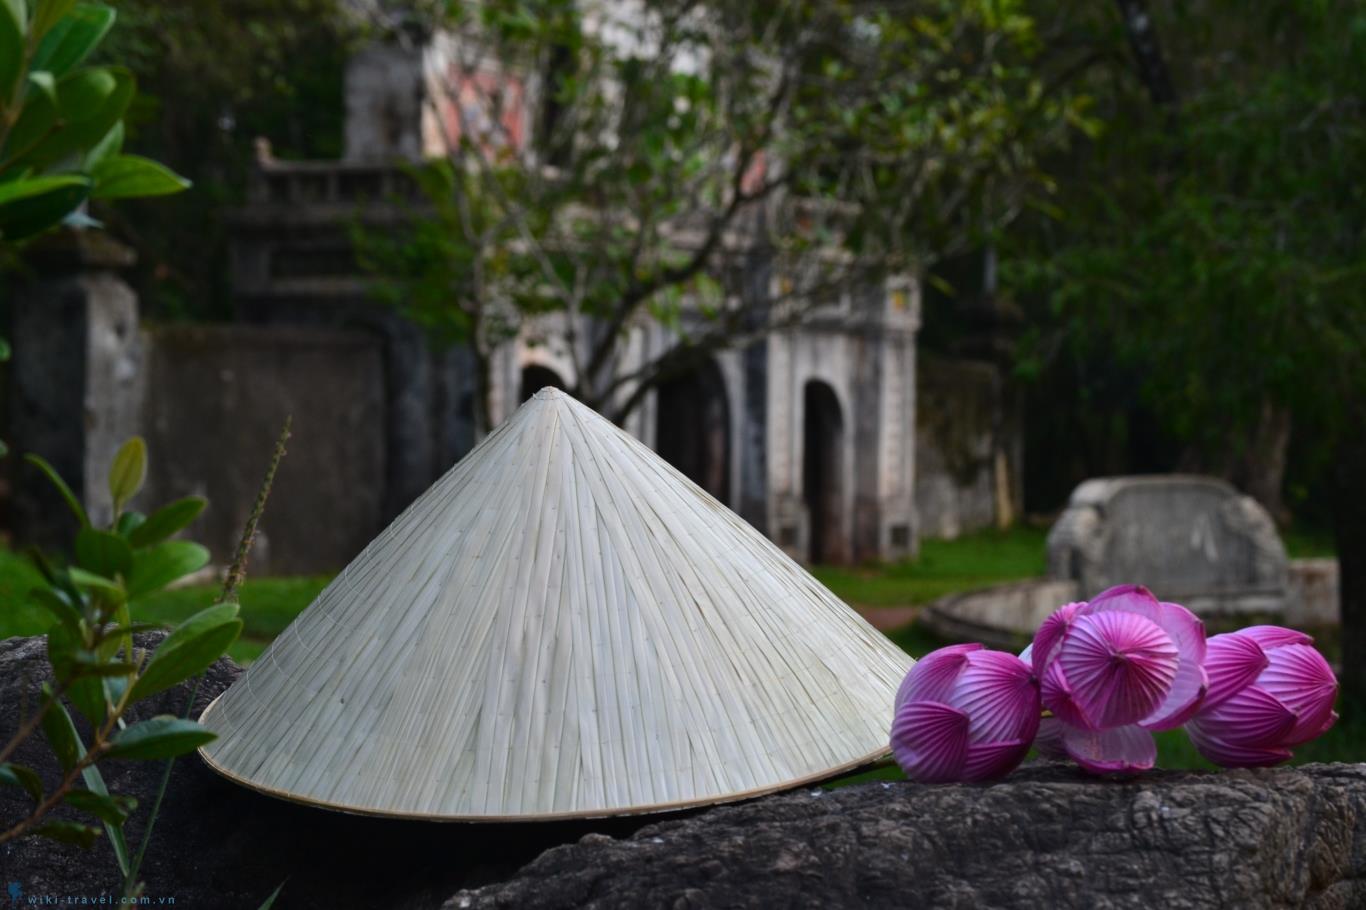 Nón lá Phú Châu: Nơi giữ gìn hồn quê đất Việt